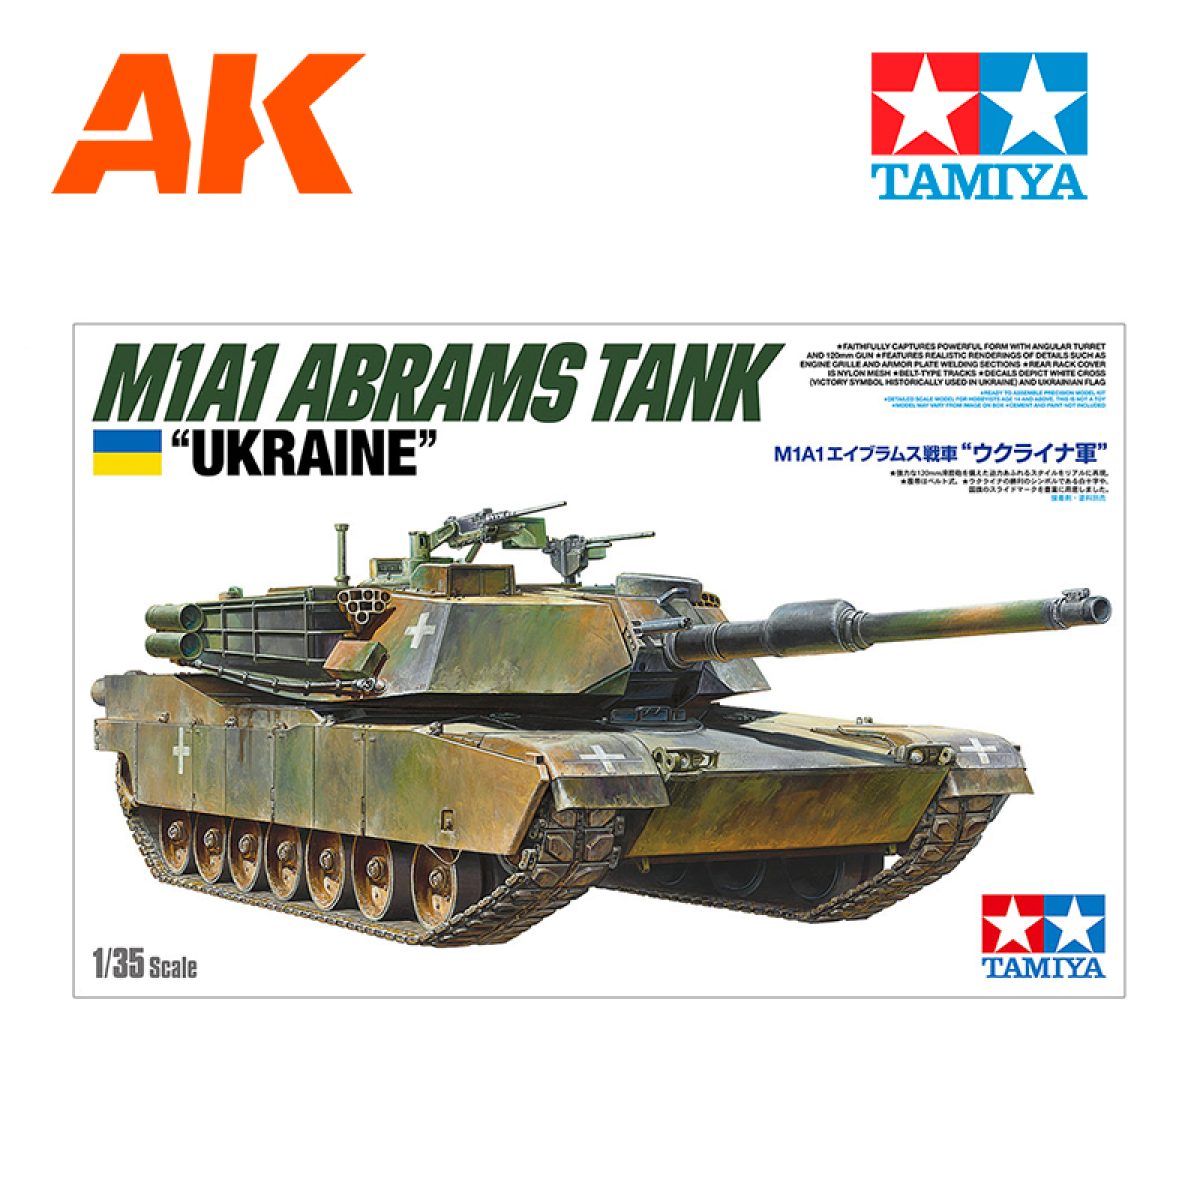 AK INTERACTIVE: CARVING FOAM 8mm thick, A5 size (228 x 152 mm.) AK8093